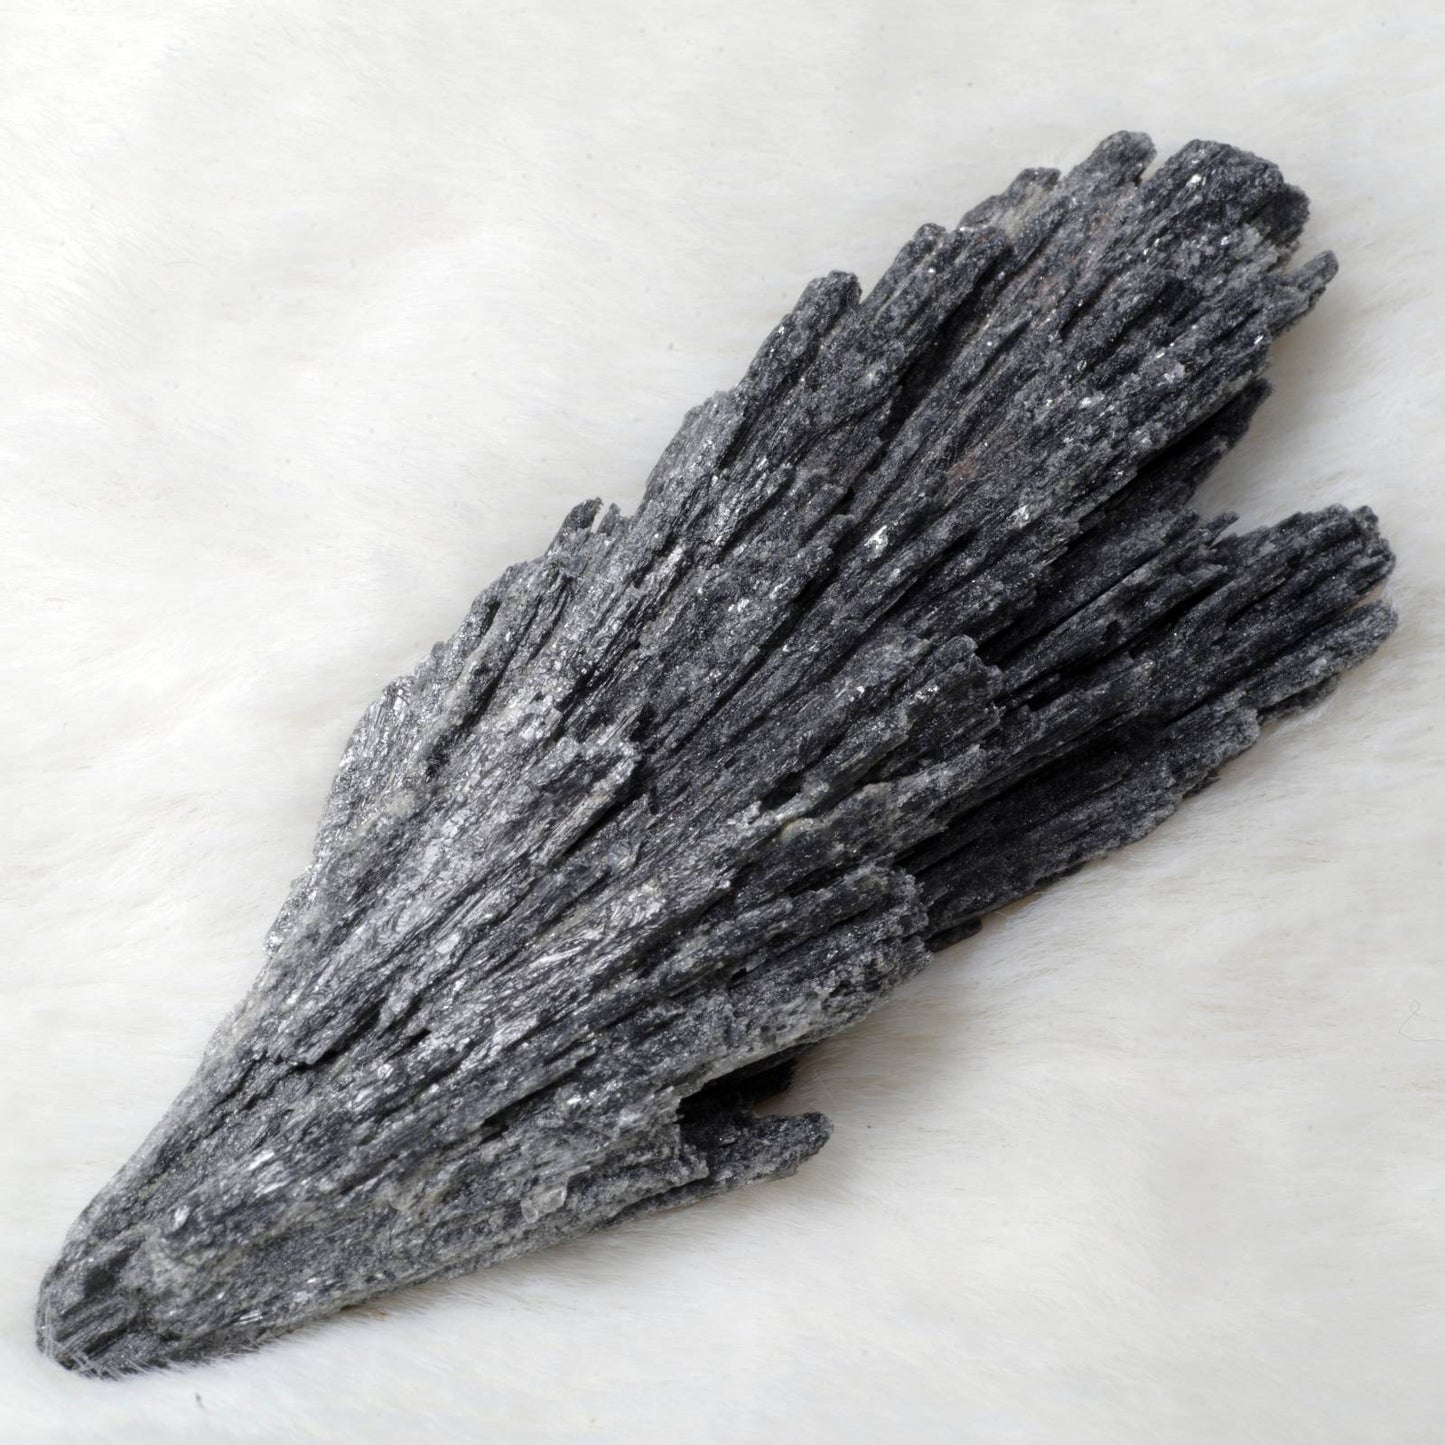 カイヤナイト 藍晶石 黒 ブラジル産2 Black Kyanite Brazil 原石 写真現物 動画あり